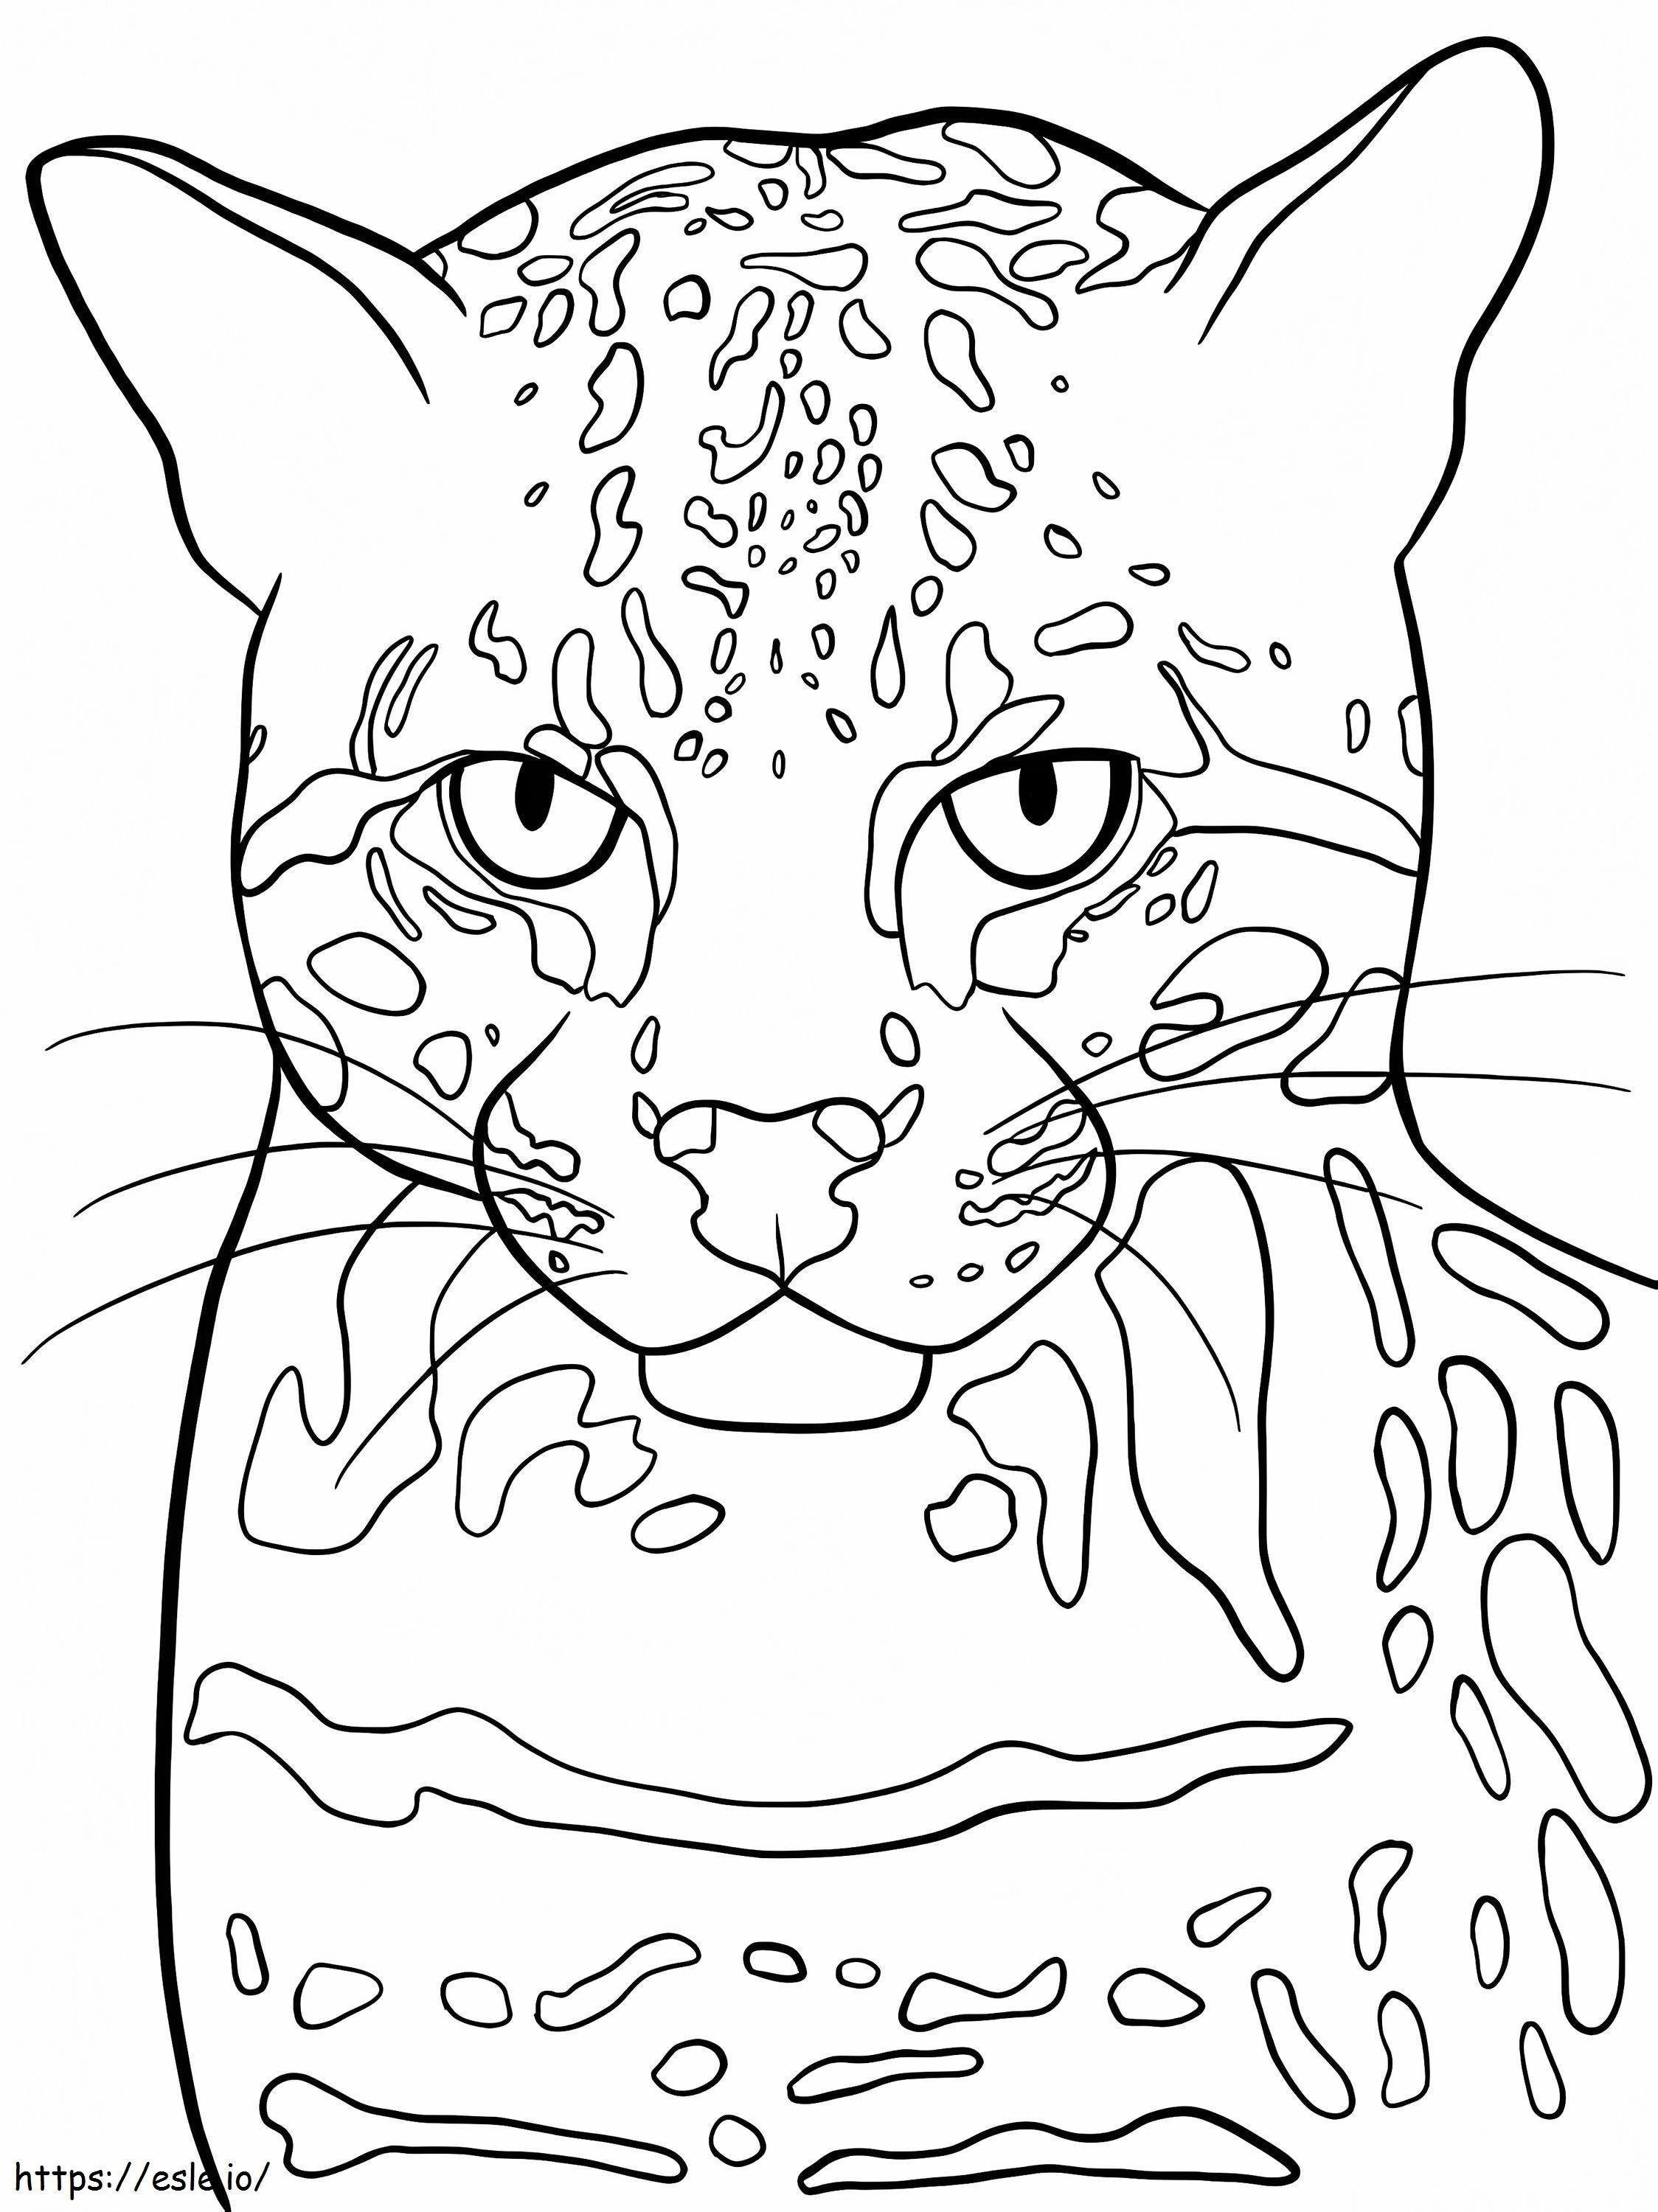 Faccia di gattopardo da colorare